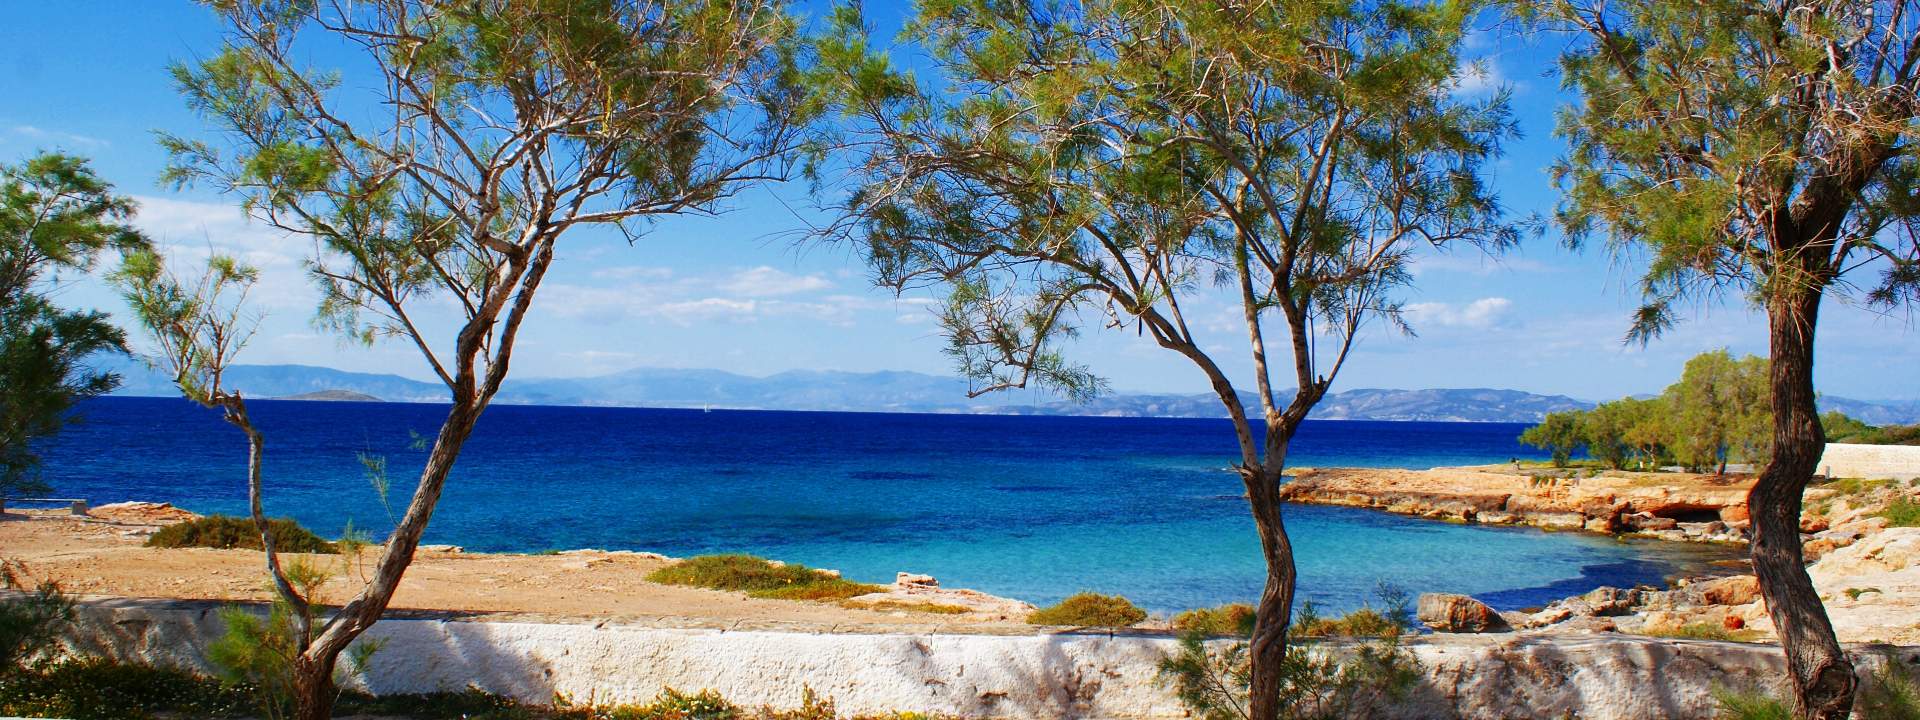 Vom Saronischen Golf bis zum Peloponnes: Entdecken Sie die schönsten griechischen Inseln